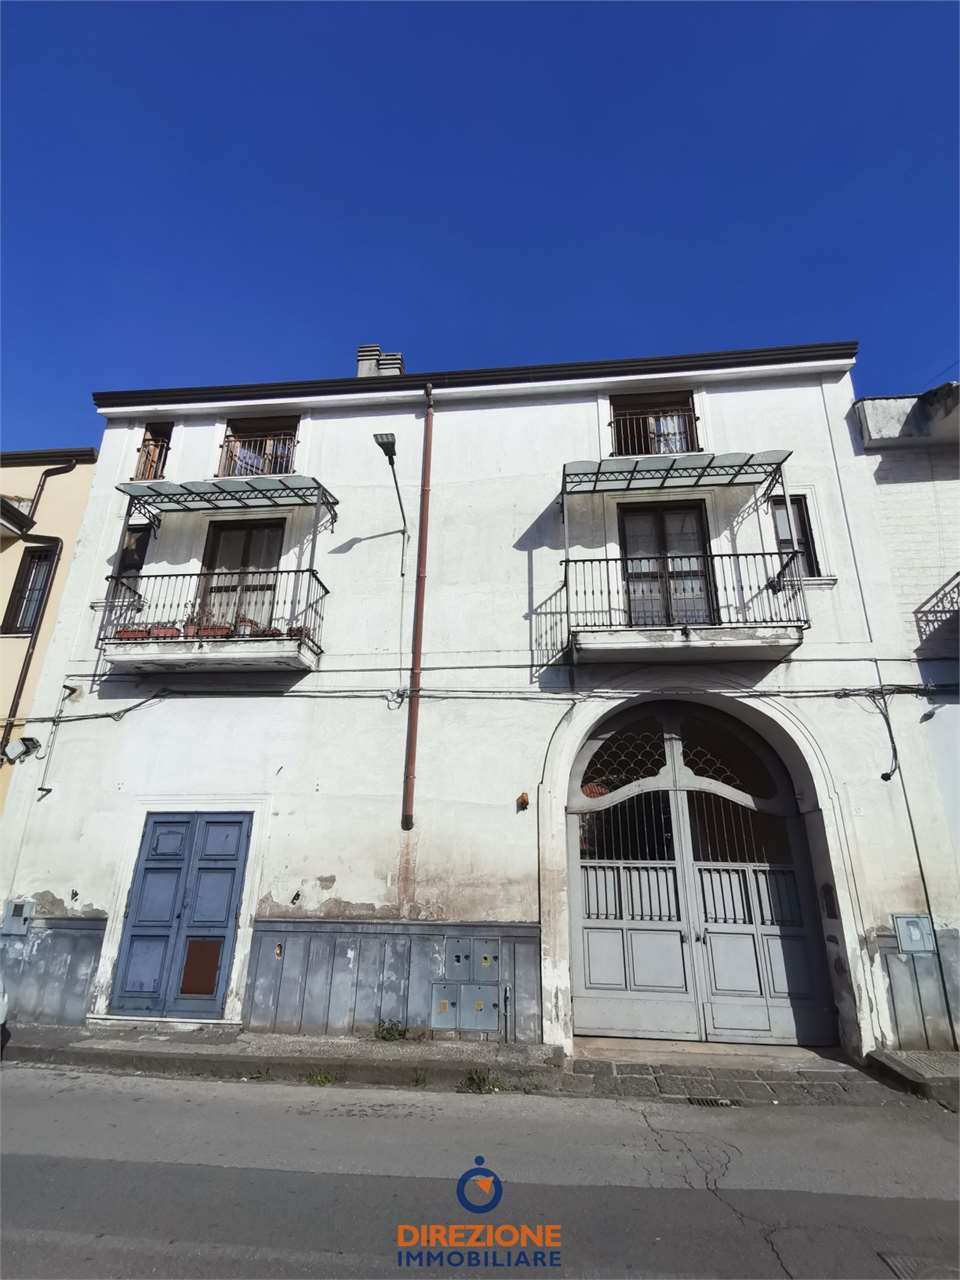 Palazzo / Stabile in vendita a Aversa, 12 locali, zona Località: NORD/EST, prezzo € 570.000 | CambioCasa.it